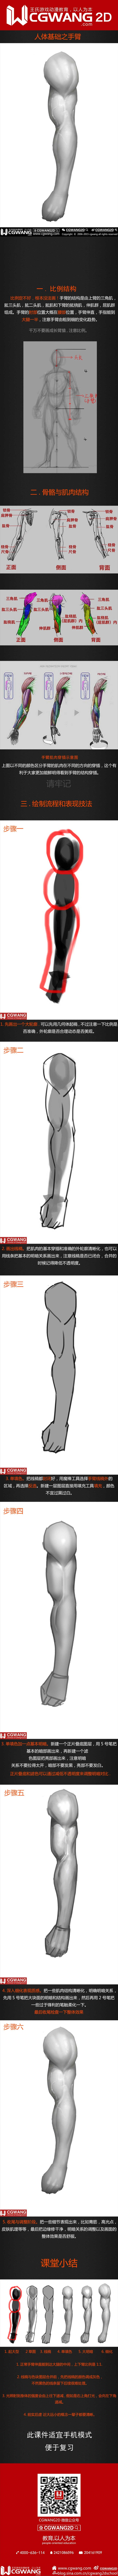 原画、插画、漫画、人体、手臂、CGWANG王氏教育集团、旺旺哒教程系列